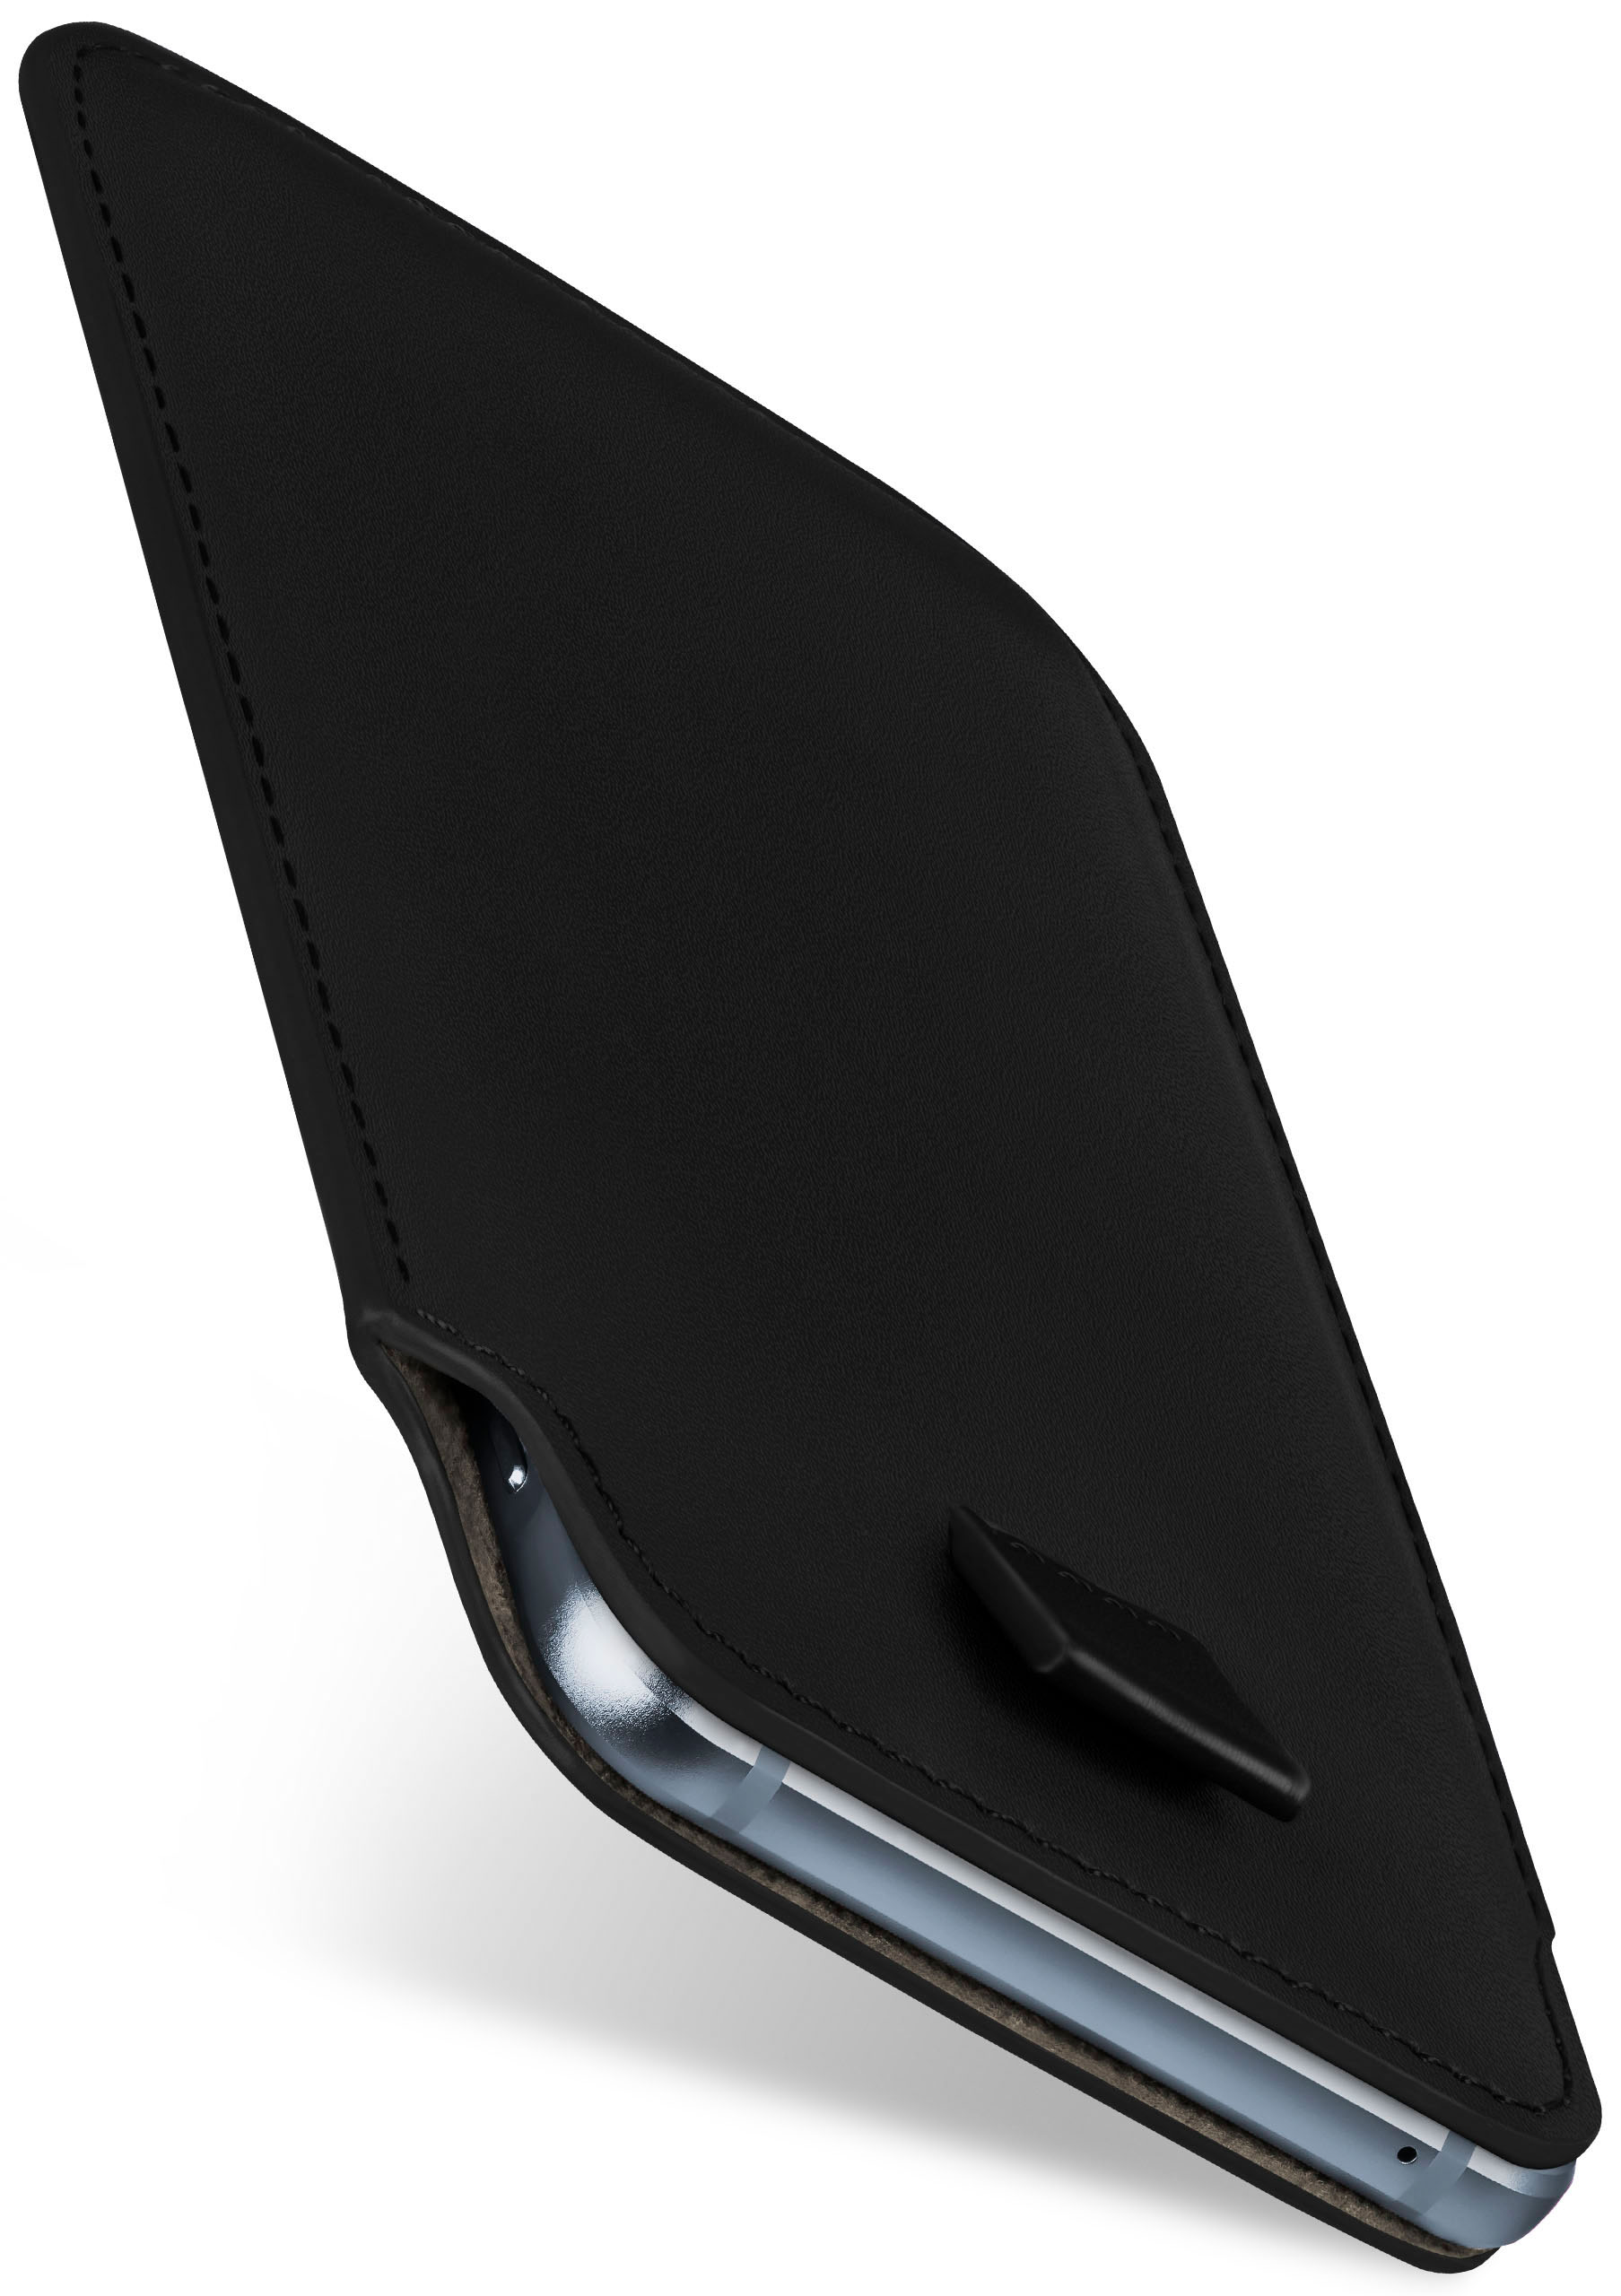 Deep-Black Slide Cover, A5, MOEX Full Elephone Case, ELEPHONE,